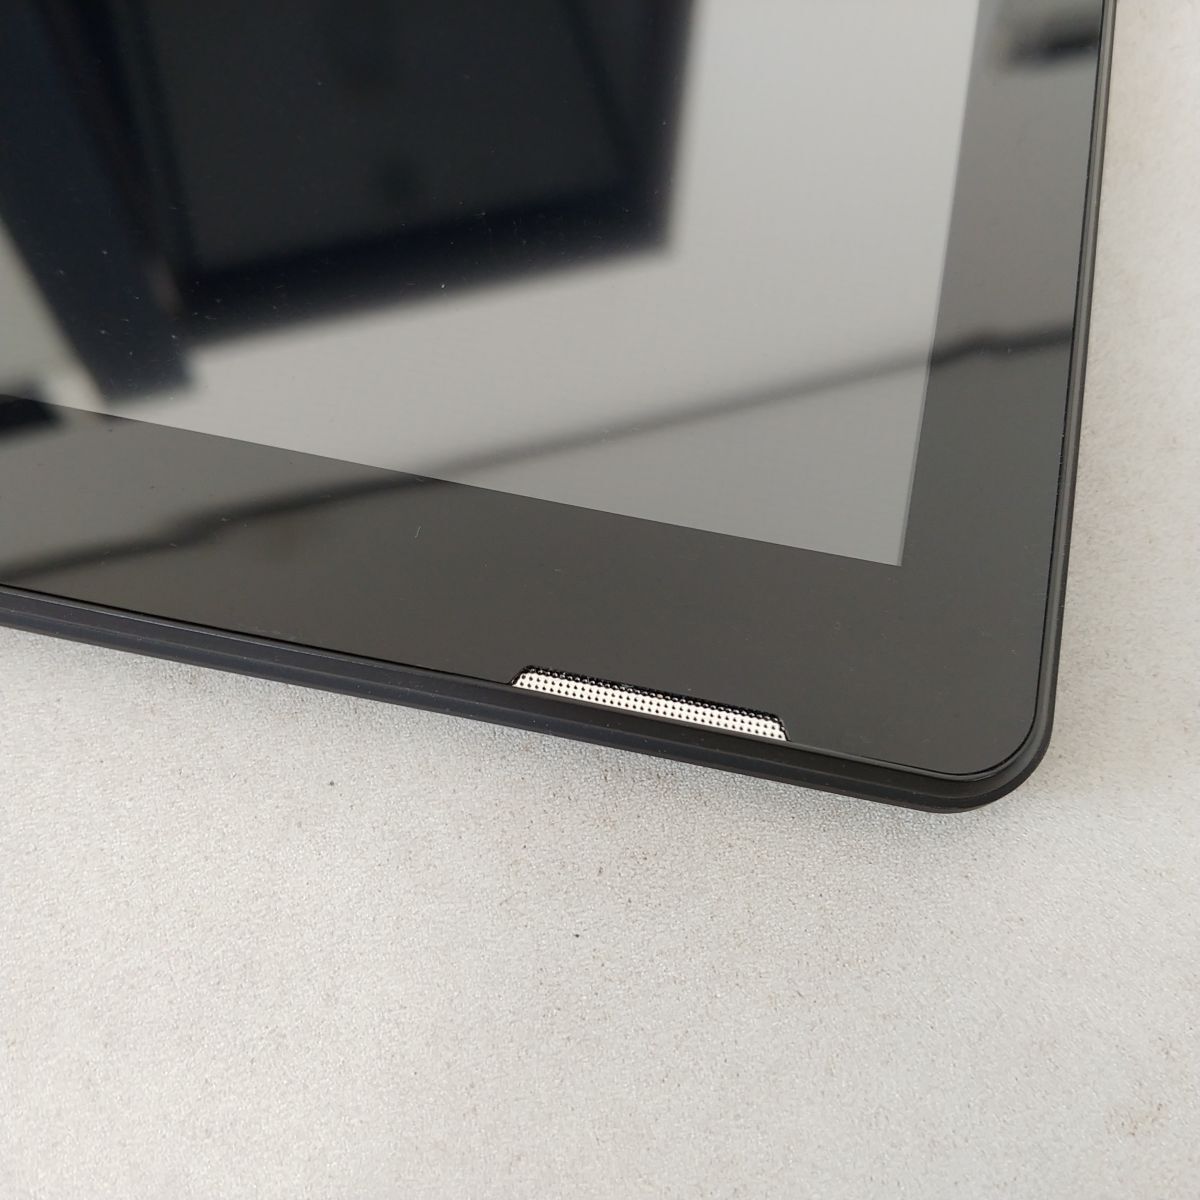 【☆動作確認済☆】Geanee Android アンドロイド タブレット型PC JT10-X 10.1 インチ MT8168 Wi-Fi モデル ブラック 1円スタート MA496の画像3